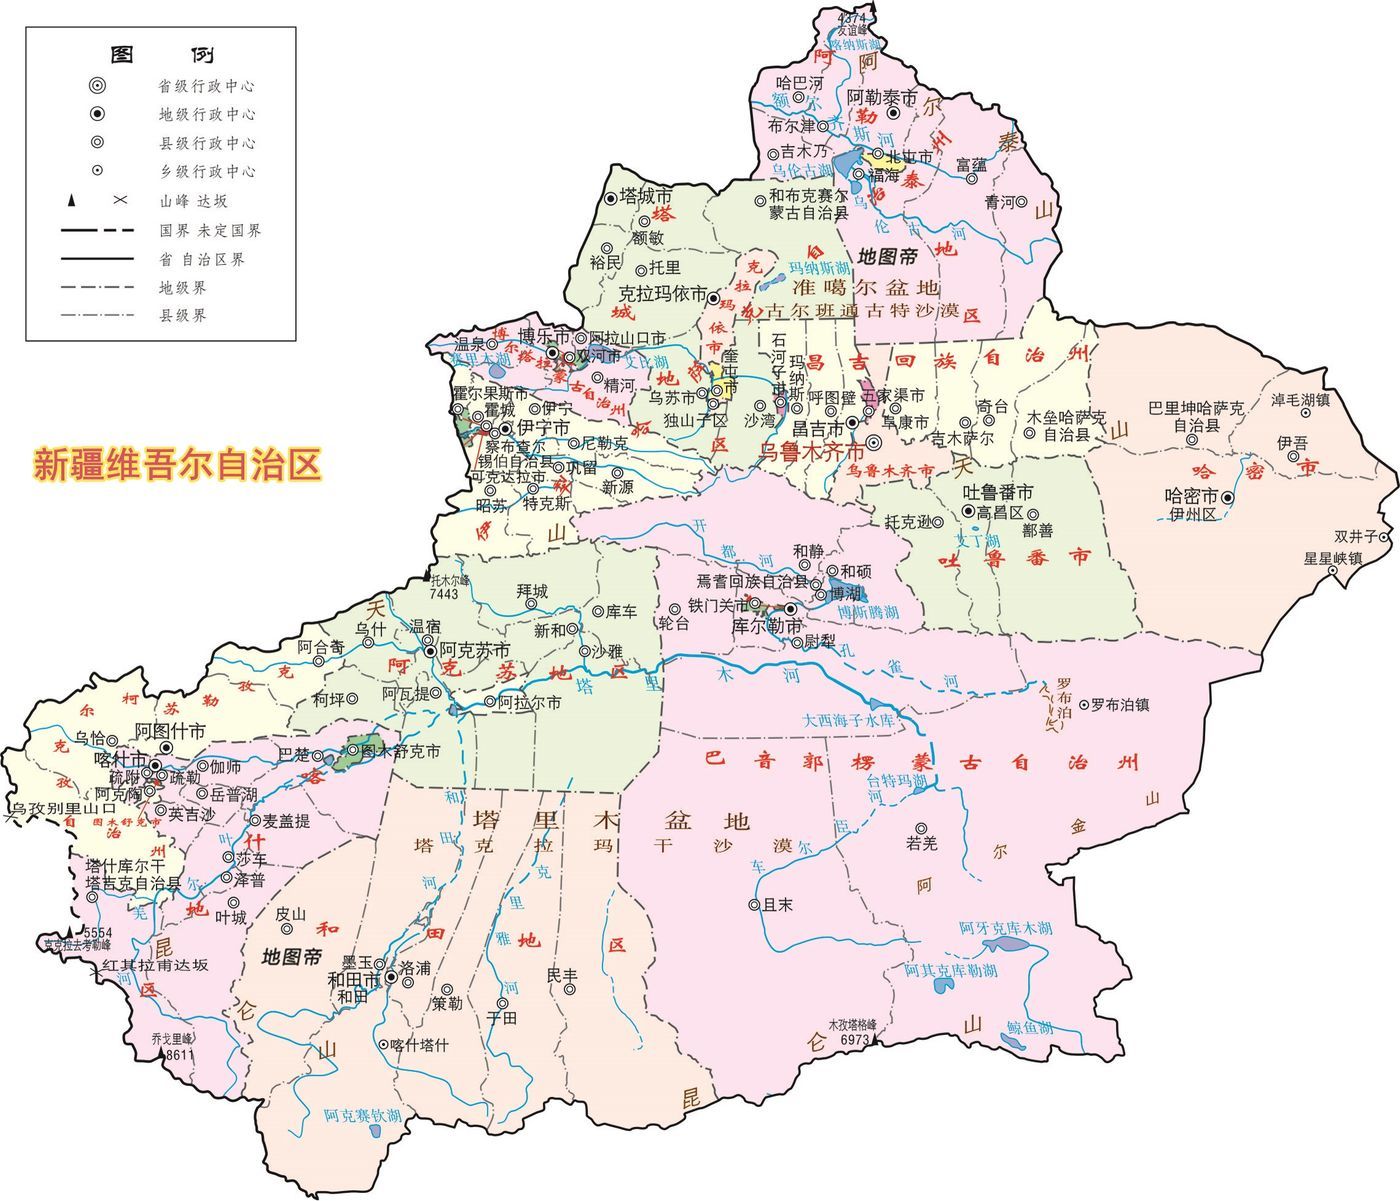 新疆行政区划地图|新疆行政区划地图全图高清版大图片|旅途风景图片网|www.visacits.com